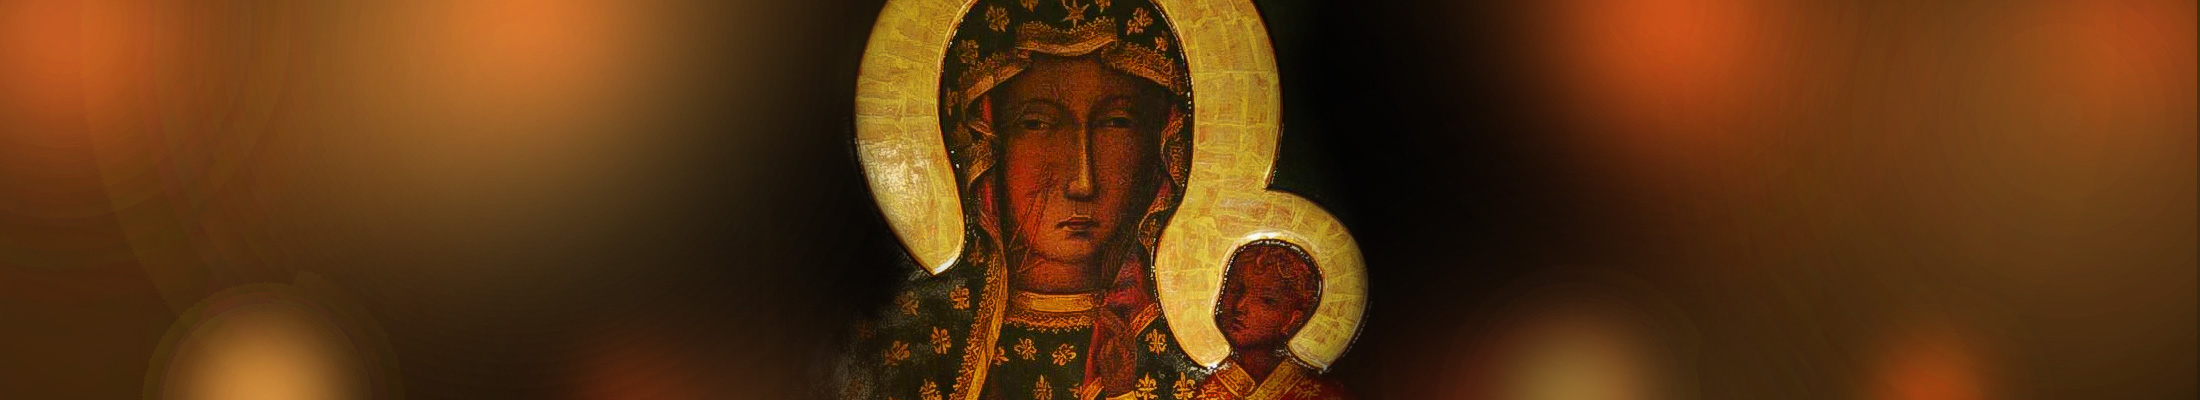 Peregrynacja obrazu Matki Boskiej Częstochowskiej